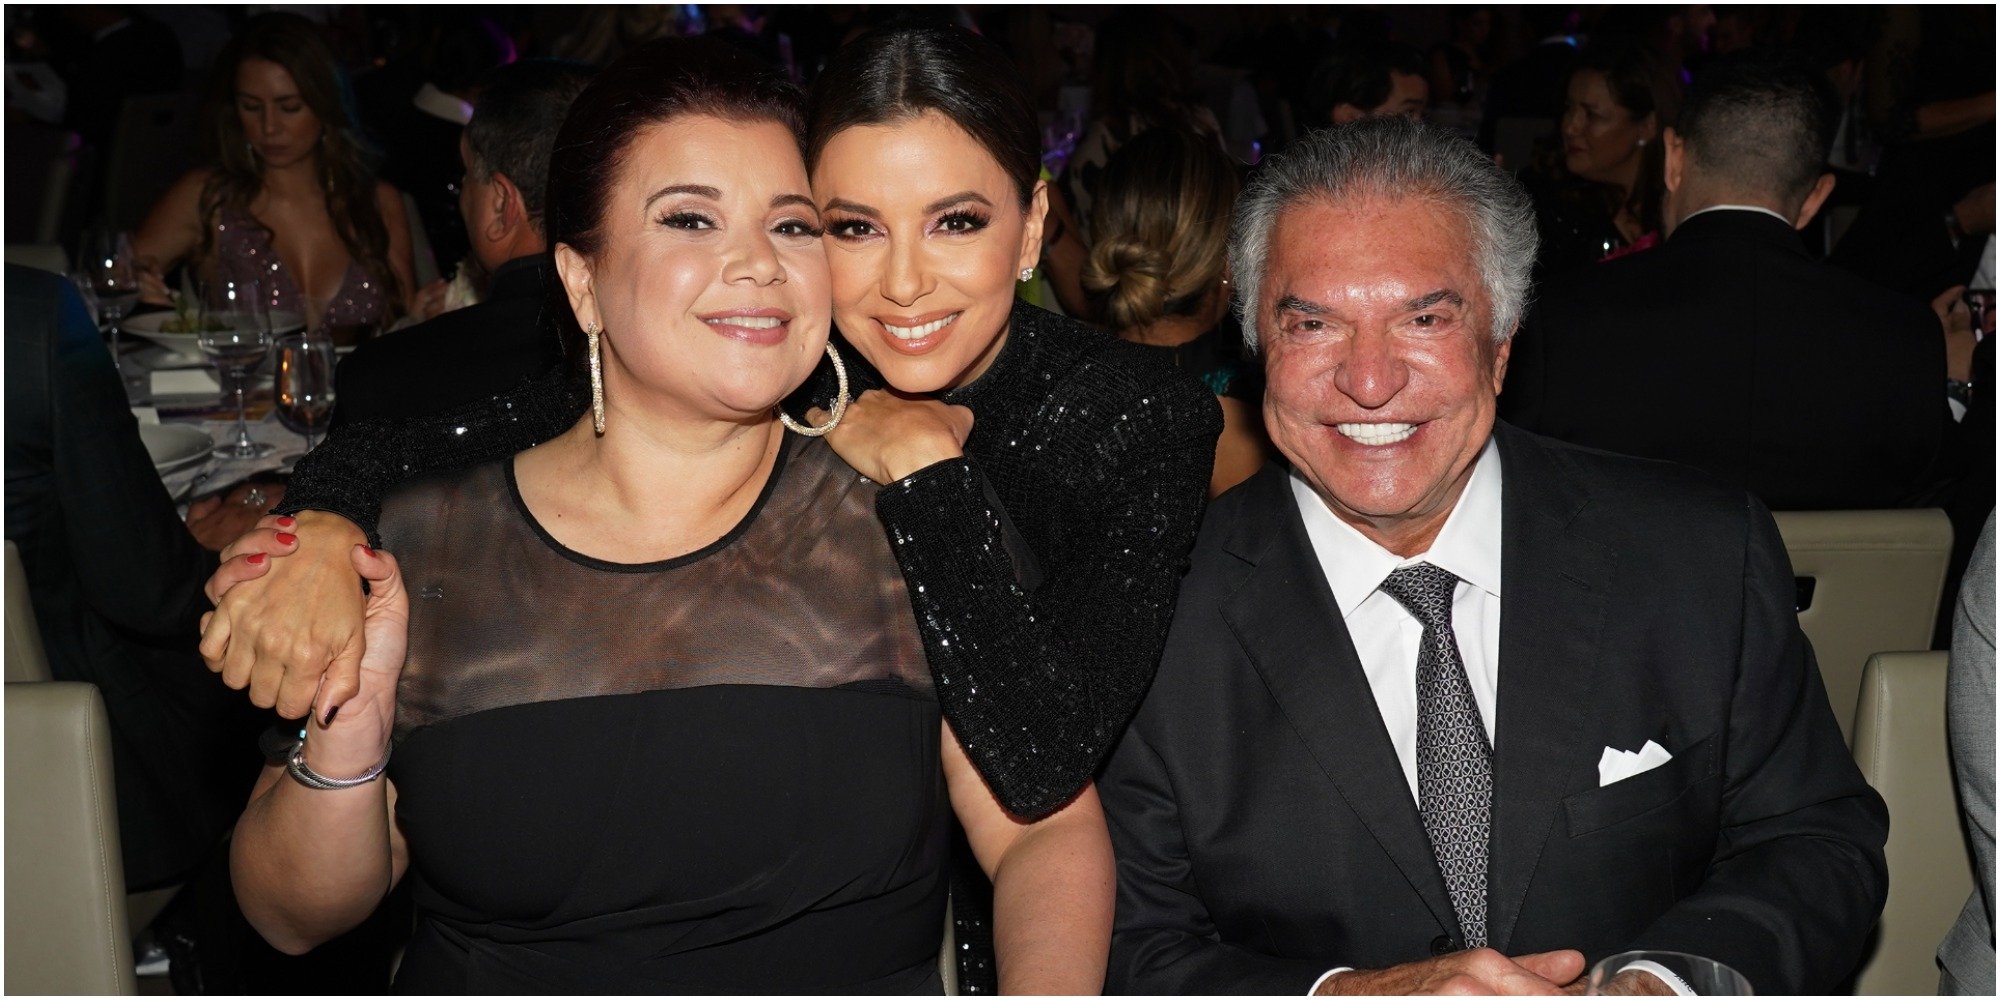 Ana Navarro, Eva Longoria and Al Cardenas pose at a celebrity event.